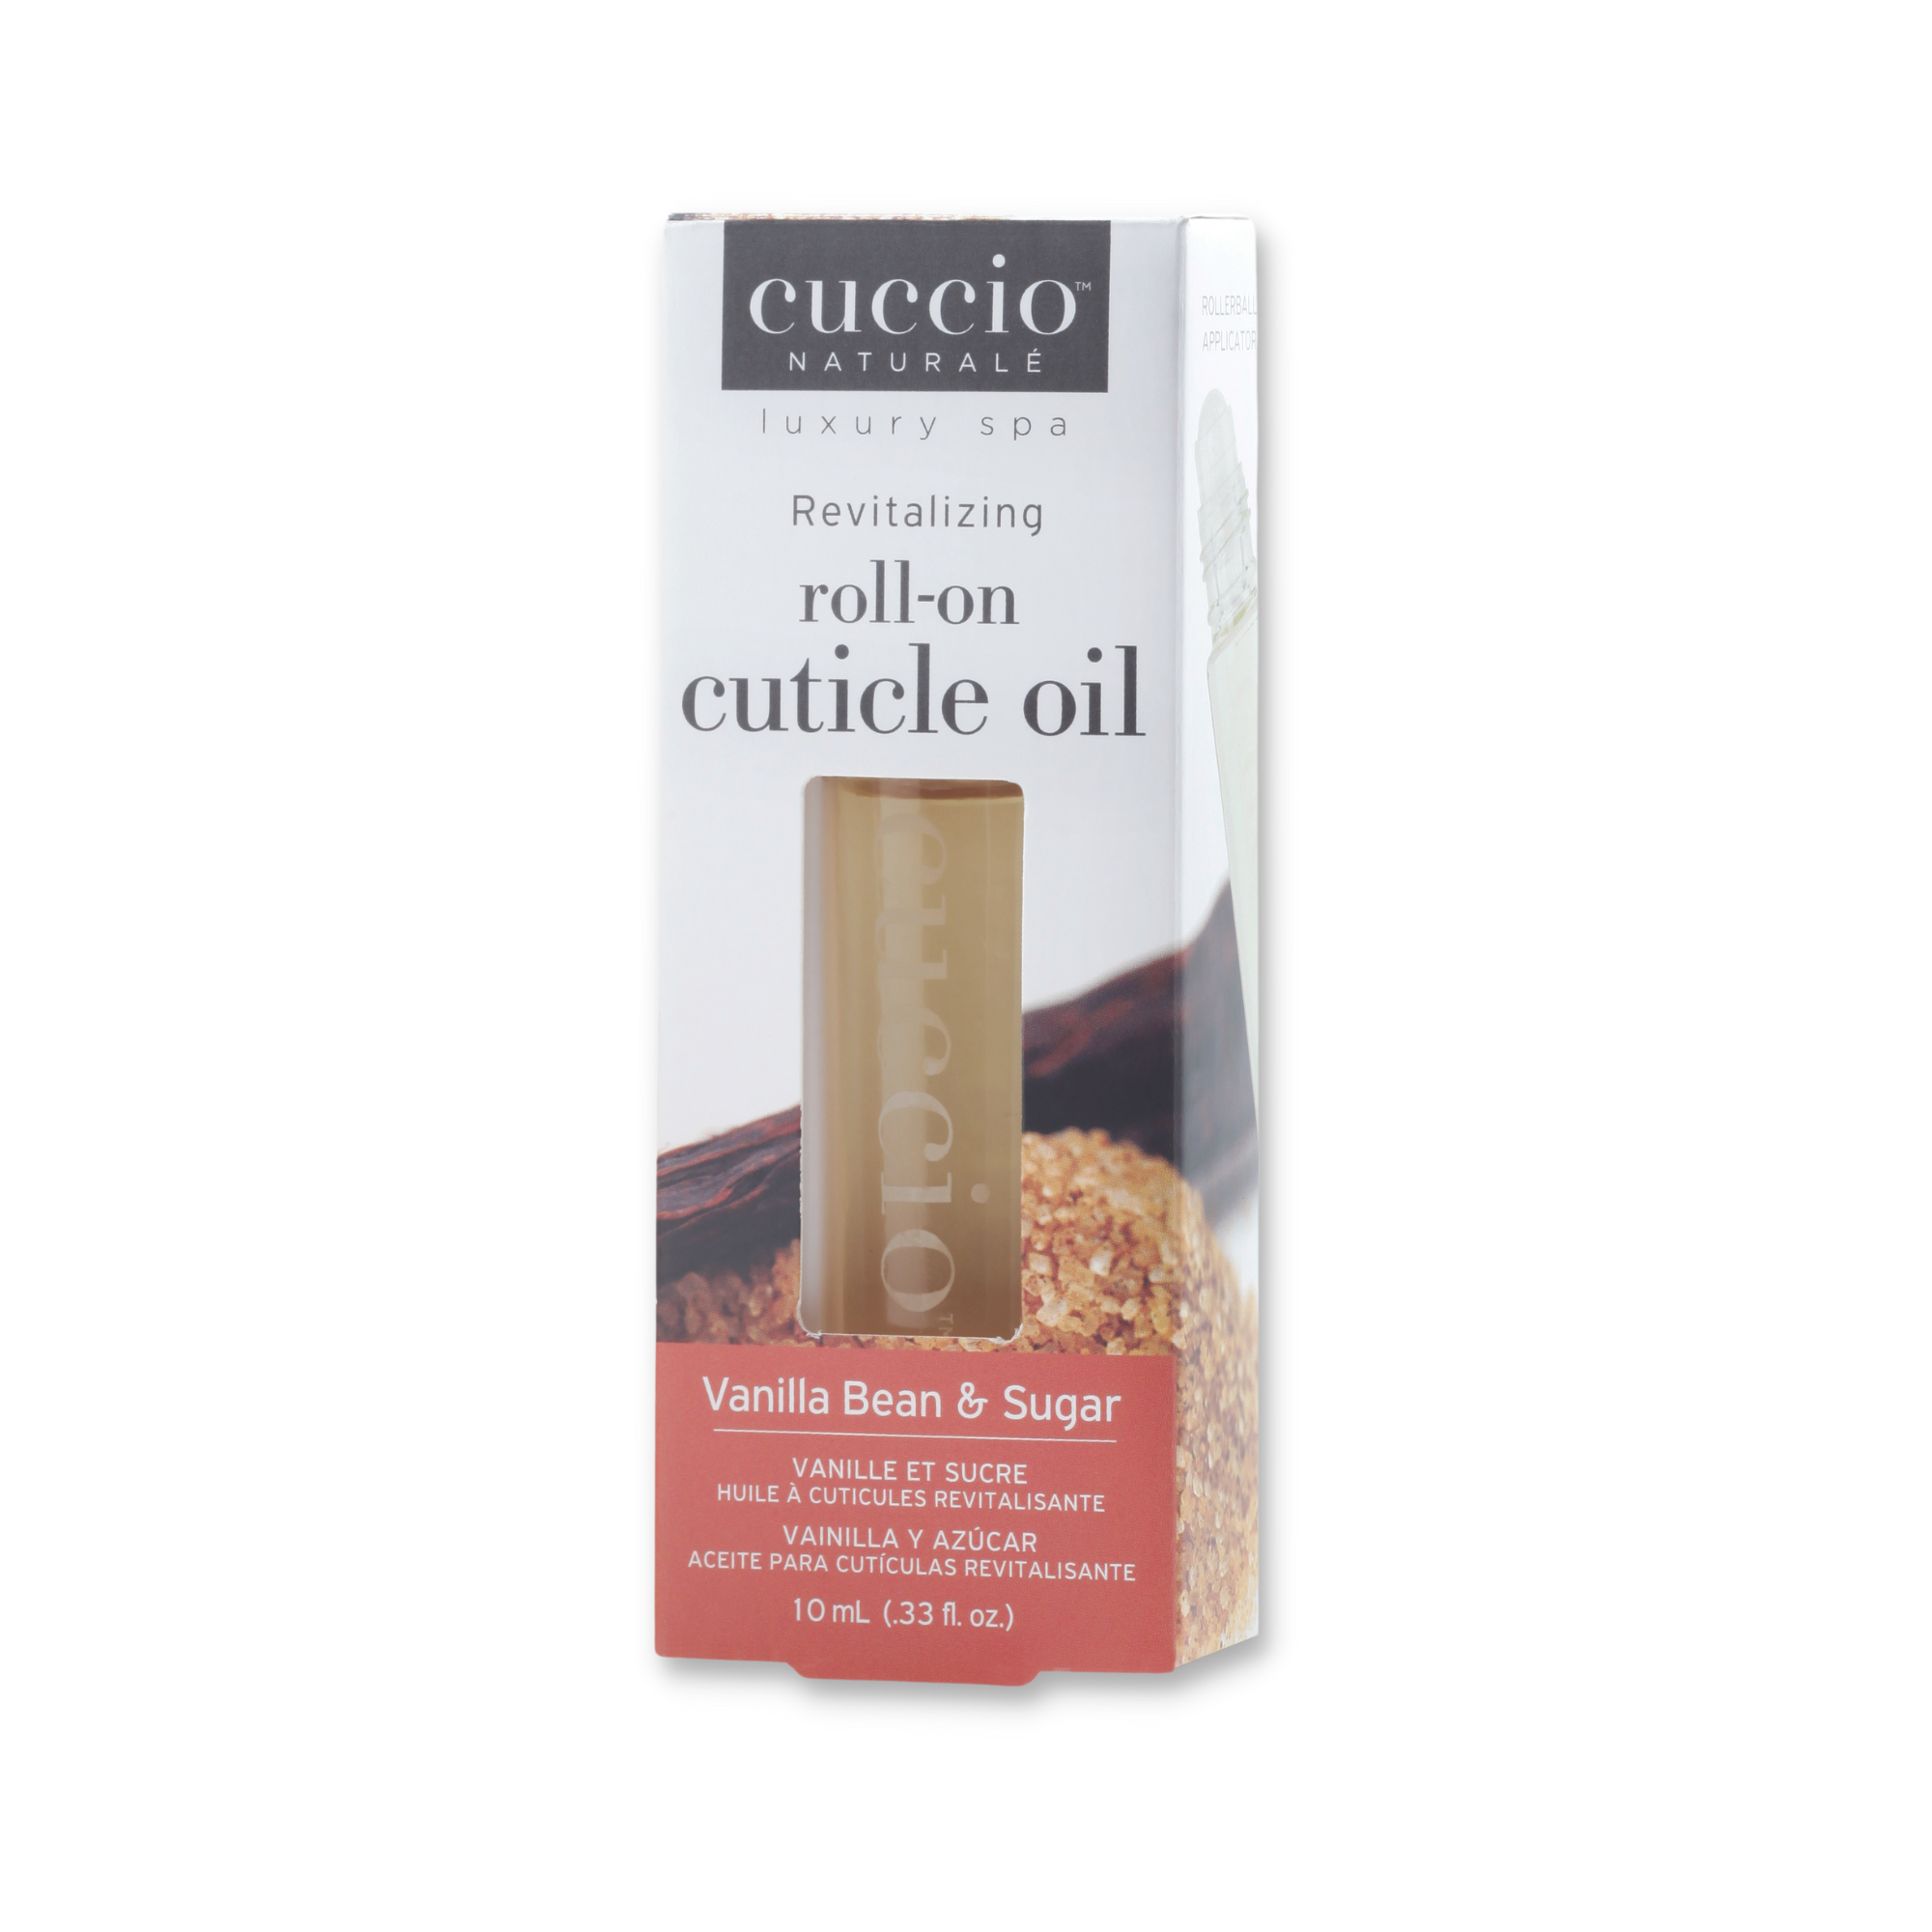 Cuccio Naturalé Revitalizing Roll-on Cuticle Oil - Vanilla Bean & Sugar 10ml